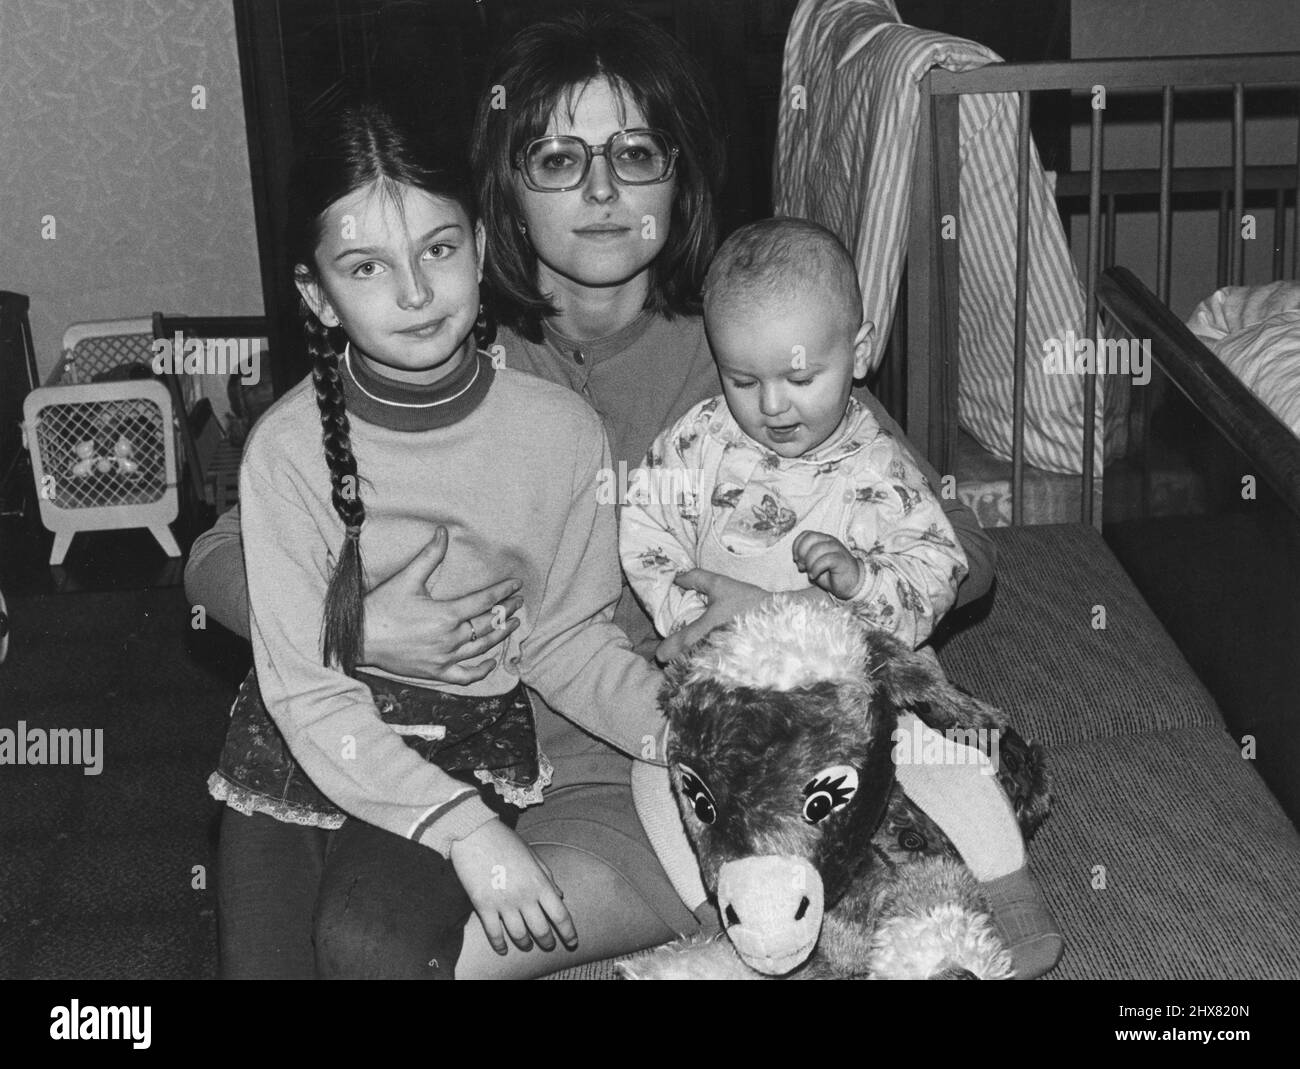 ARCHIV 1973Model Paulina Porizkova als Kind mit ihrer Mutter Anna und ihrem Bruder Joachim. Paulinas Familie floh nach der sowjetischen Invasion 1968 aus der Tschechoslowakei nach Schweden, ohne Paulina, die von den tschechoslowakischen Behörden festgenommen wurde. Nach einem langen Kampf der Eltern wurde Paulina in den frühen 70er Jahren nach Schweden entlassen, wo sie wieder mit ihrer Familie vereint wurde. Als 15-Jährige zog sie 1980 in die USA und wurde Vorbild. Foto: Scandia Photopress / TT / Code: 680 Stockfoto